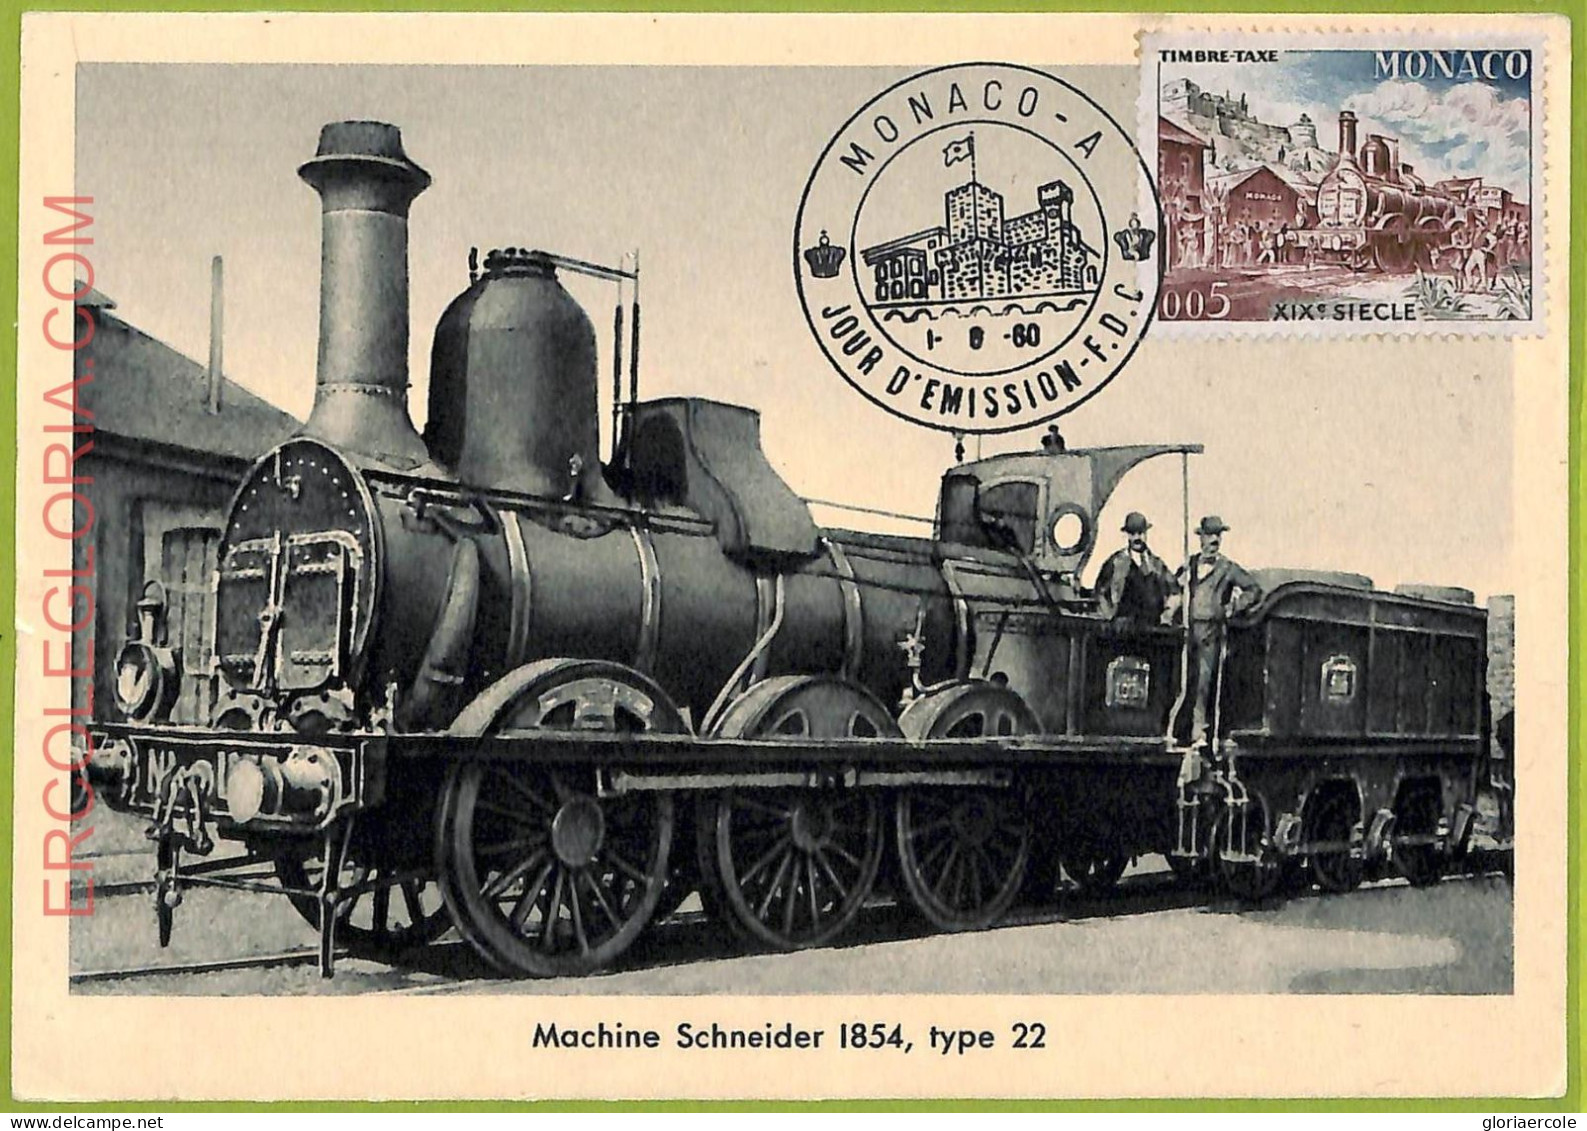 Ad3240 - MONACO - Postal History - MAXIMUM CARD -  1960   TRAINS - Trains